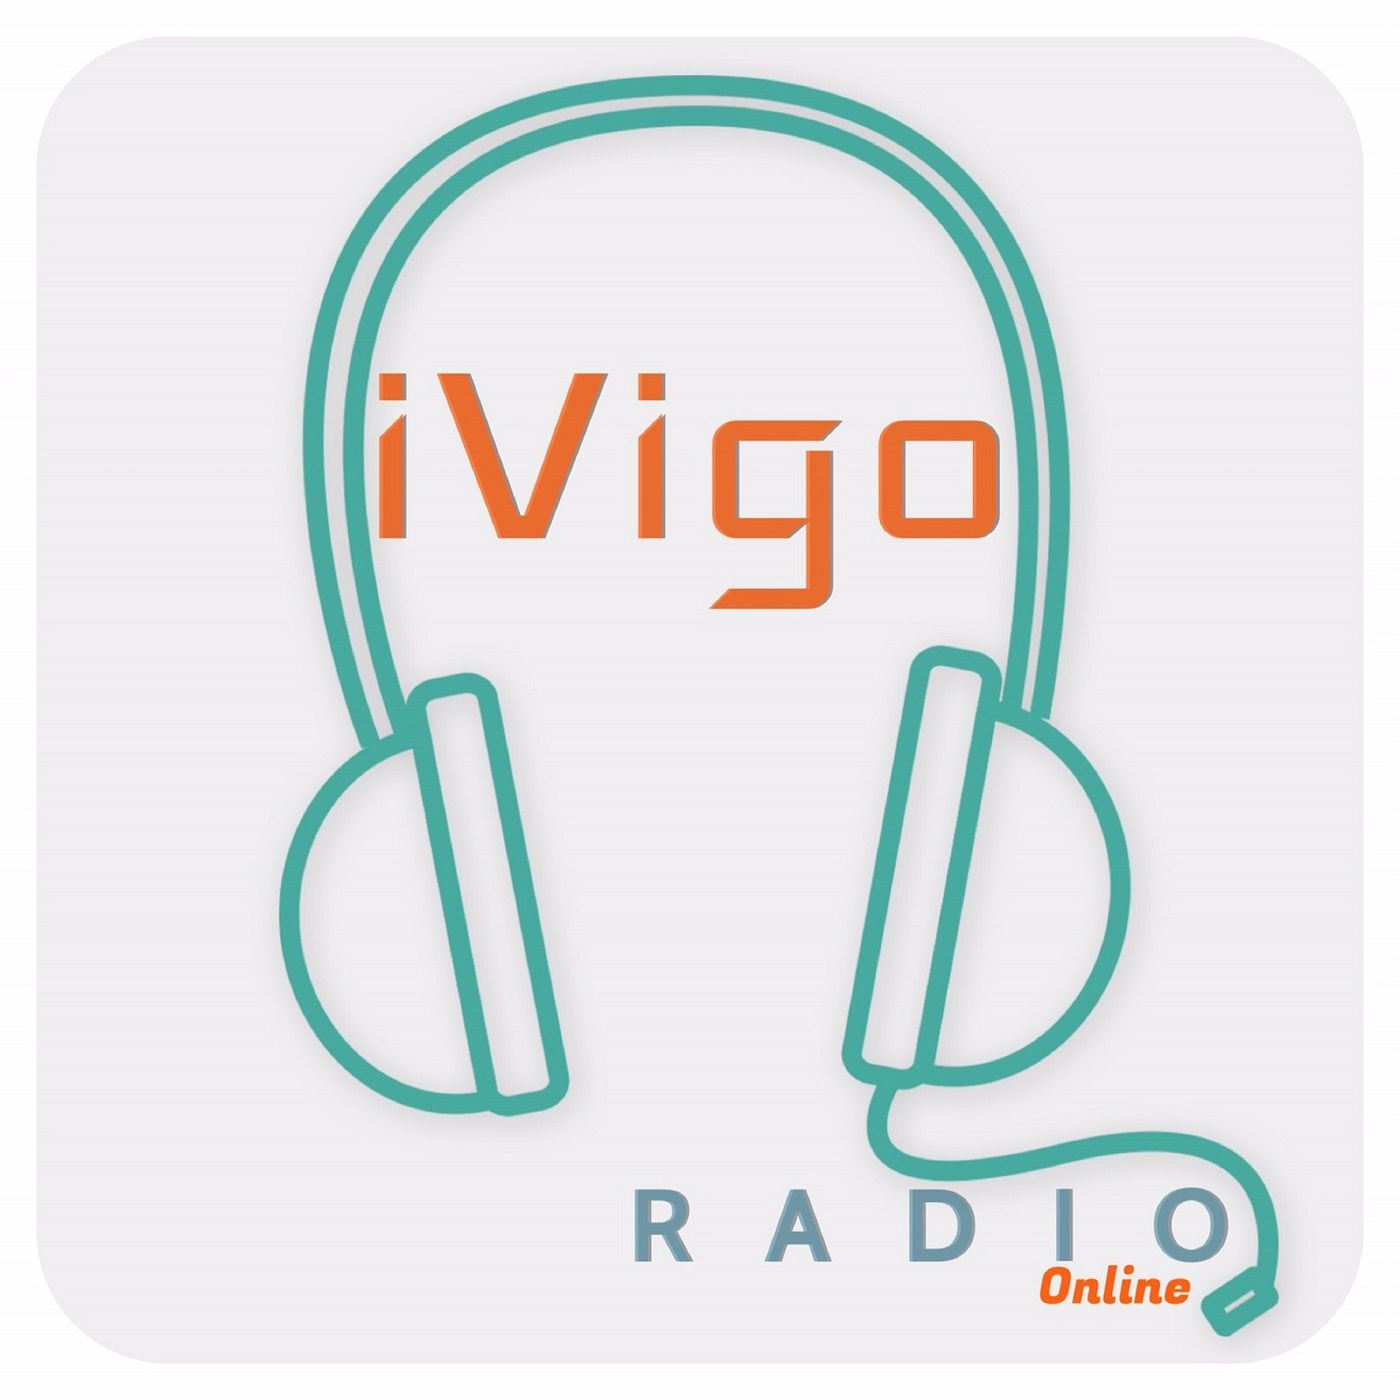 iVigo Radio